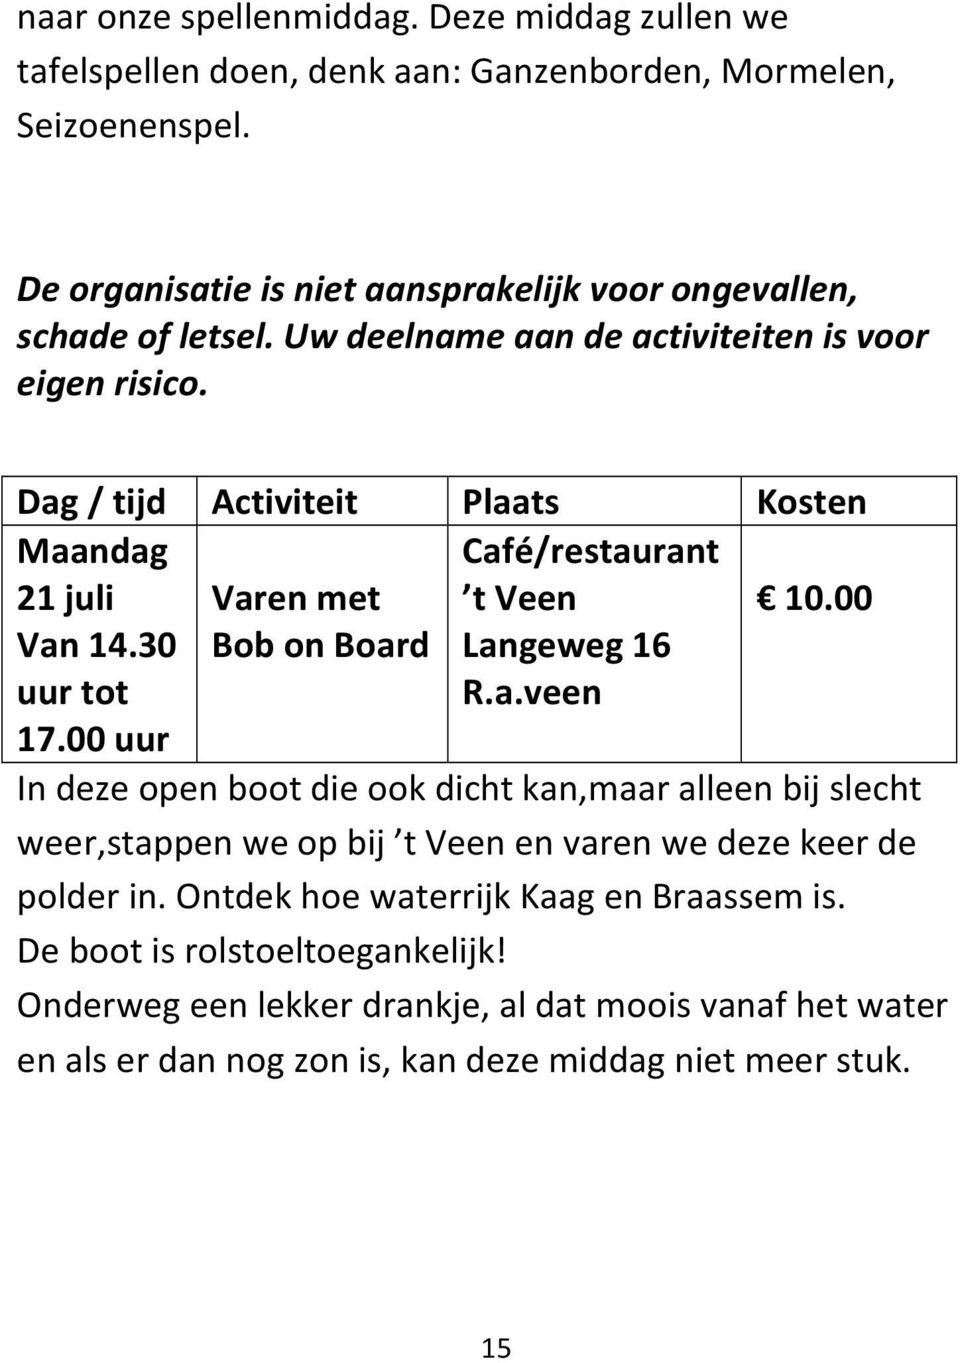 Maandag 21 juli Varen met Café/restaurant t Veen 10.00 Van 14.30 uur tot 17.00 uur Bob on Board Langeweg 16 R.a.veen In deze open boot die ook dicht kan,maar alleen bij slecht weer,stappen we op bij t Veen en varen we deze keer de polder in.